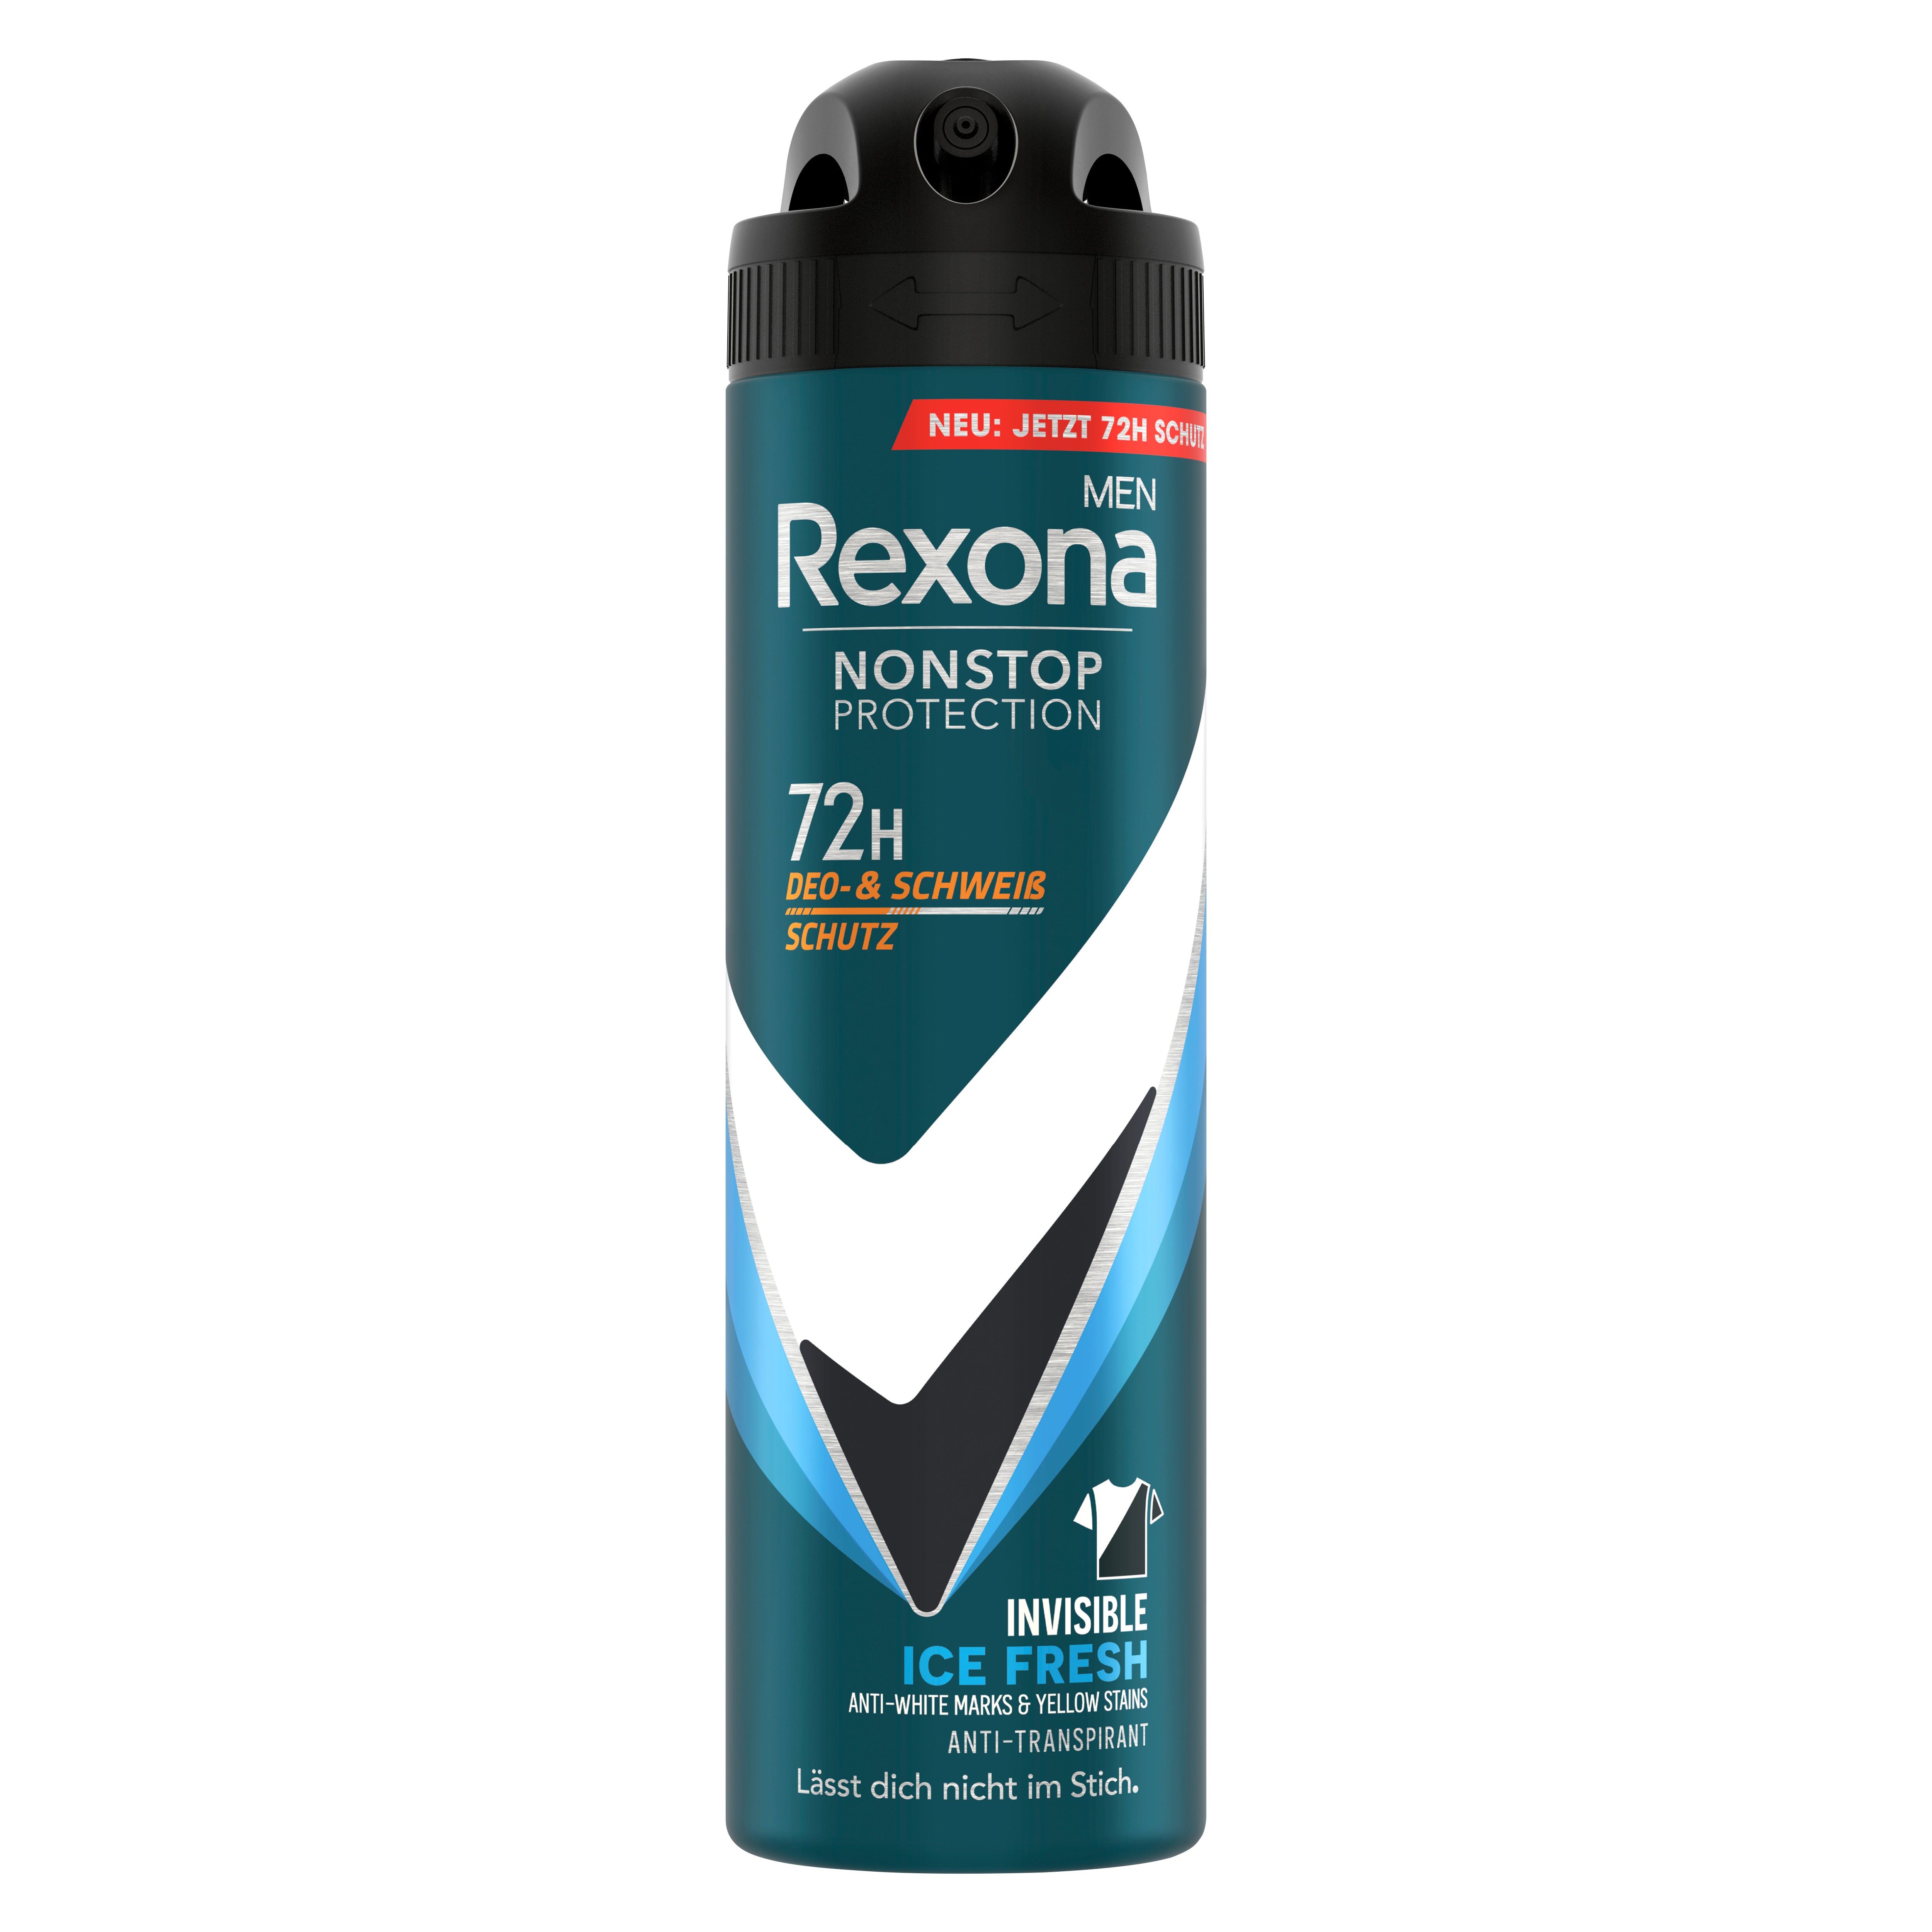 Rexona Men Nonstop Protection Deospray Invisible Ice Fresh Anti Transpirant mit 72 Stunden Schutz vor Schweiß und Körpergeruch 150 ml